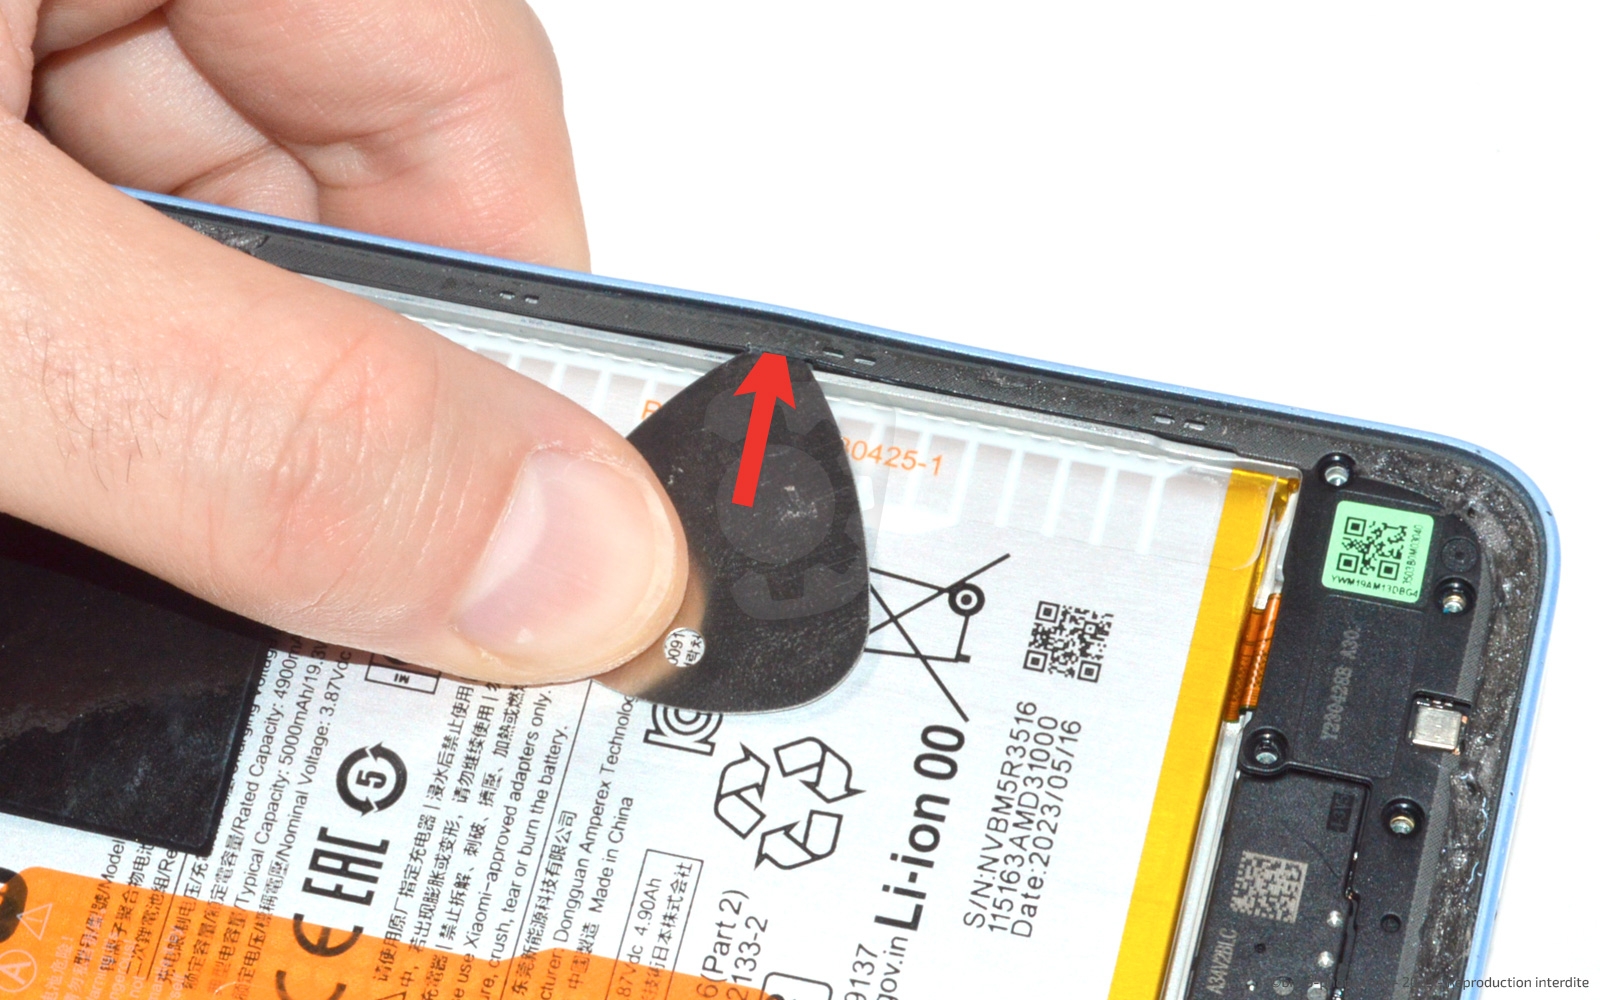 OnePlus 2 : le câble USB-C d'origine devient dangereux avec d